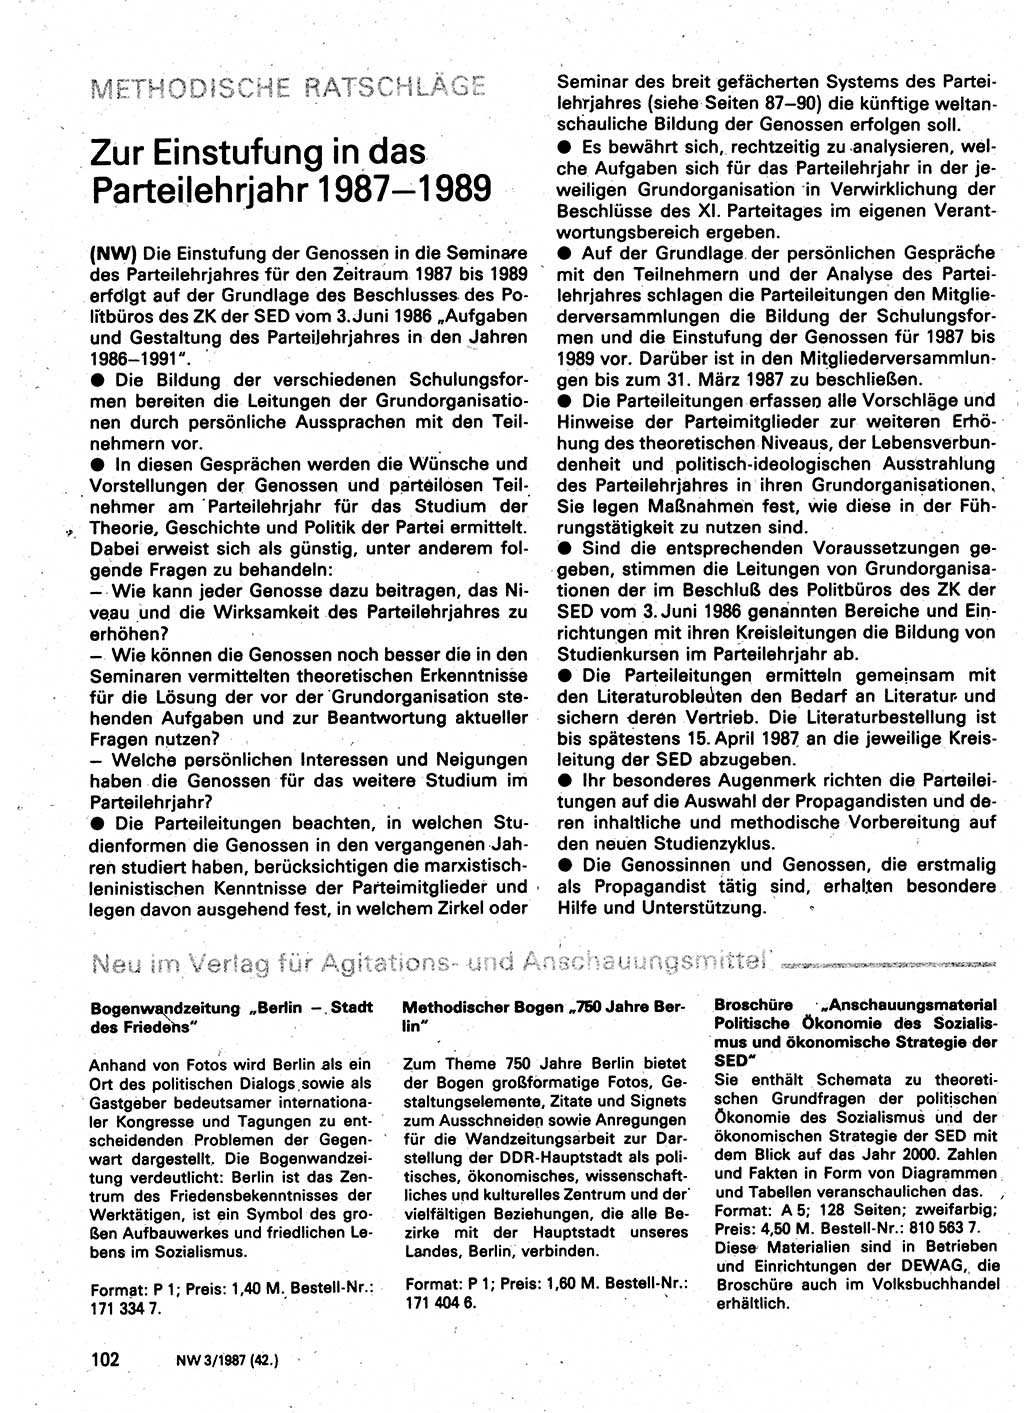 Neuer Weg (NW), Organ des Zentralkomitees (ZK) der SED (Sozialistische Einheitspartei Deutschlands) für Fragen des Parteilebens, 42. Jahrgang [Deutsche Demokratische Republik (DDR)] 1987, Seite 102 (NW ZK SED DDR 1987, S. 102)